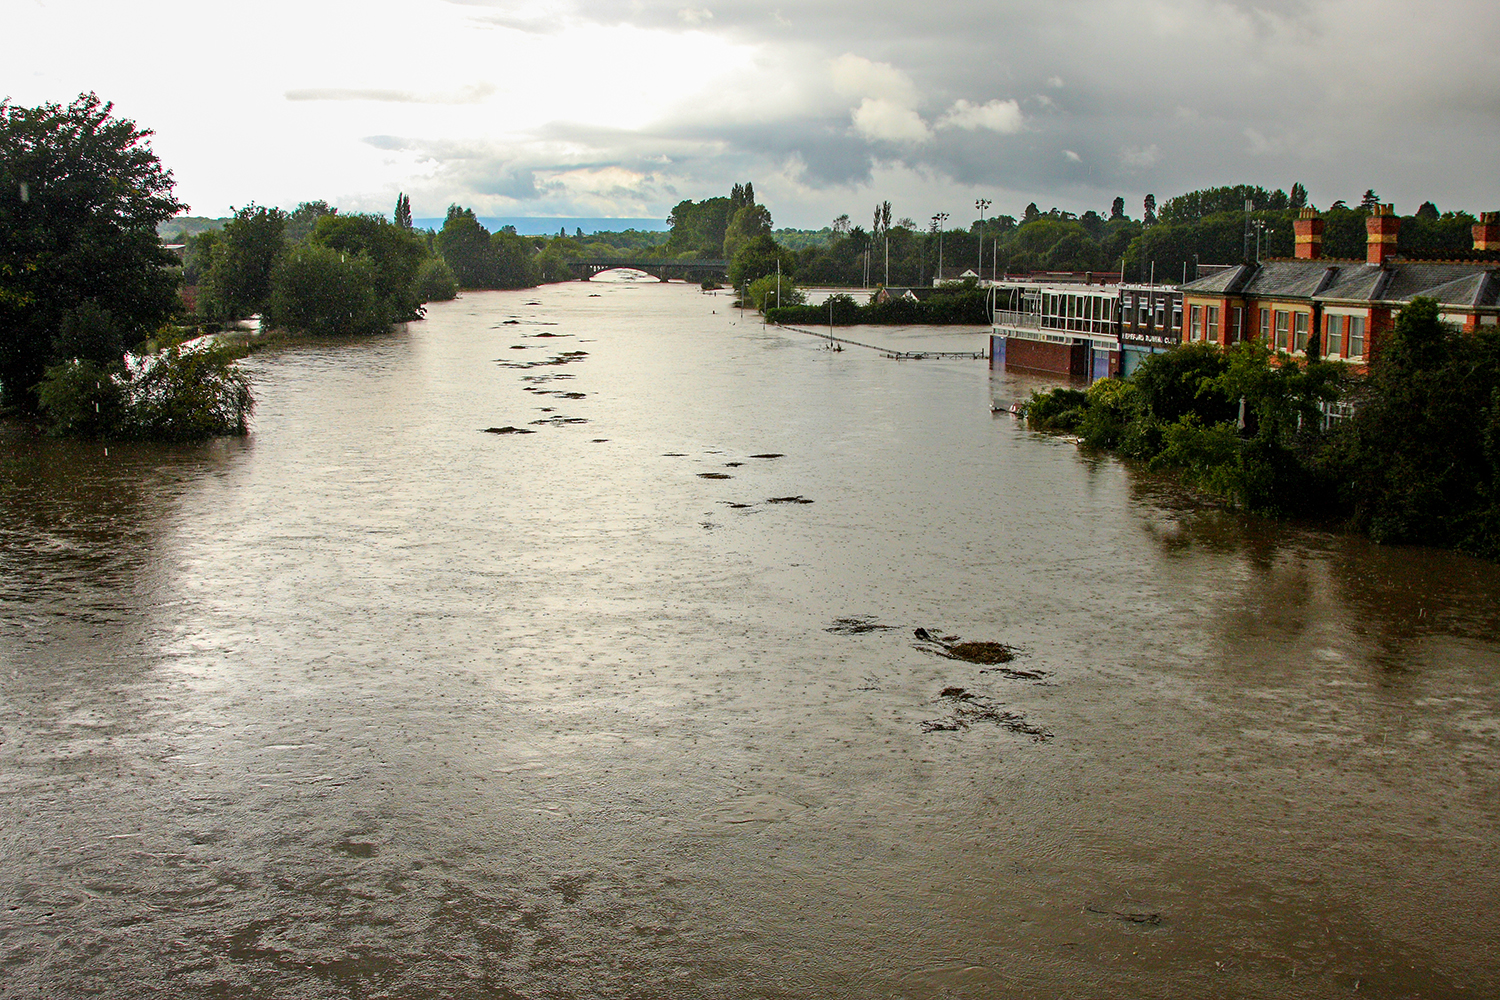 Floods, Hereford, River, Wye, Gwy, Rowing, Club, Bridge.